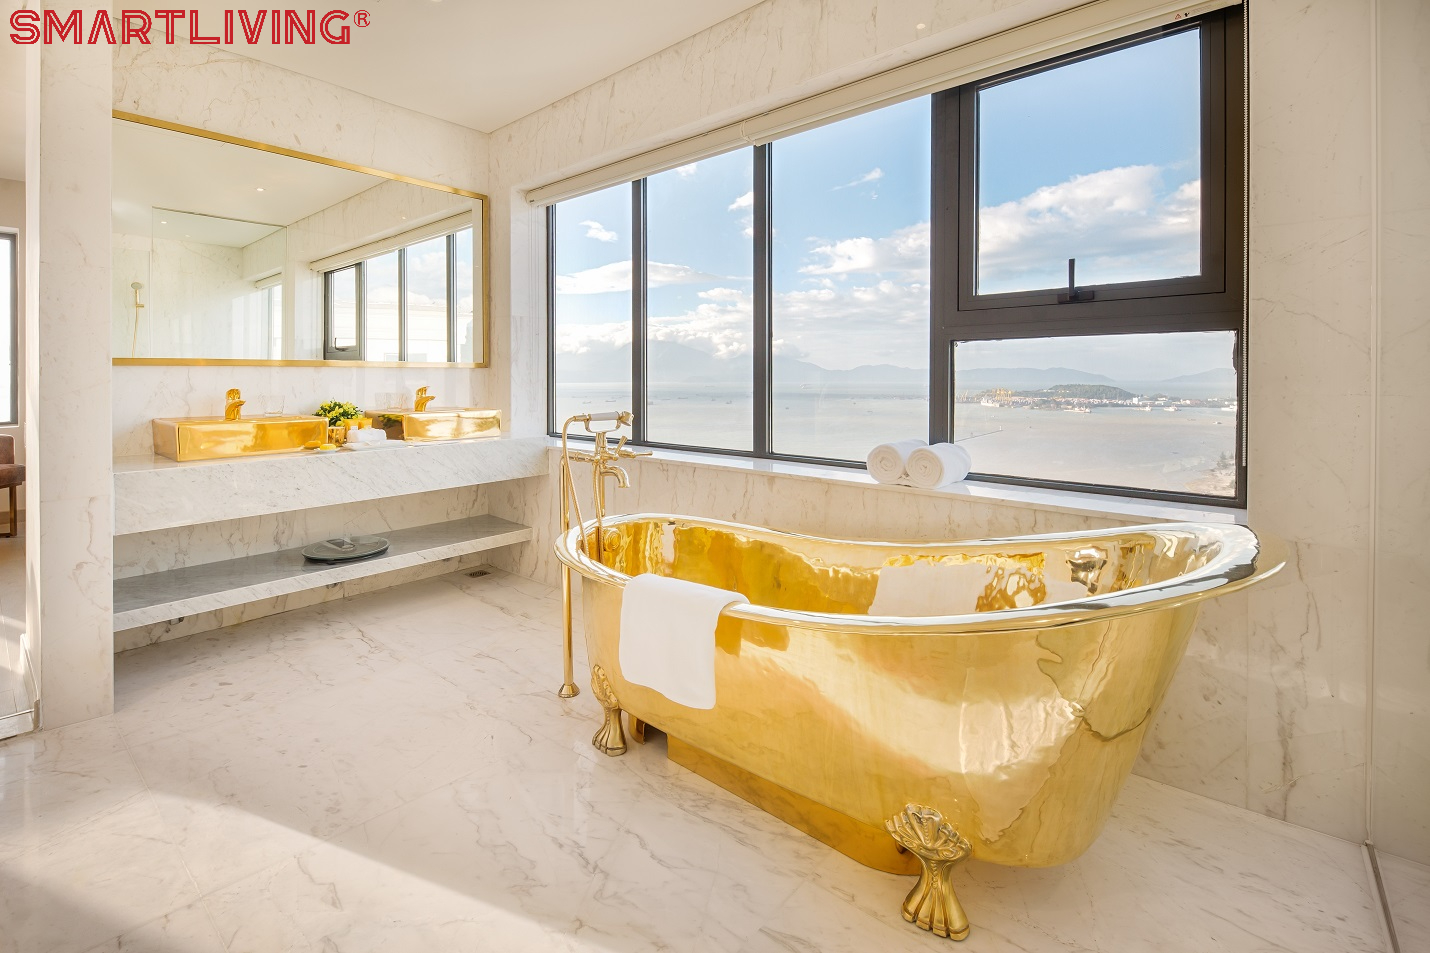 Bồn tắm giống như được dát vàng, kết hợp cùng lavabo rửa tay cũng màu sắc và chất liệu tương tự. Tổng quan thiết kế mang đến cảm giác vô cùng sang trọng.